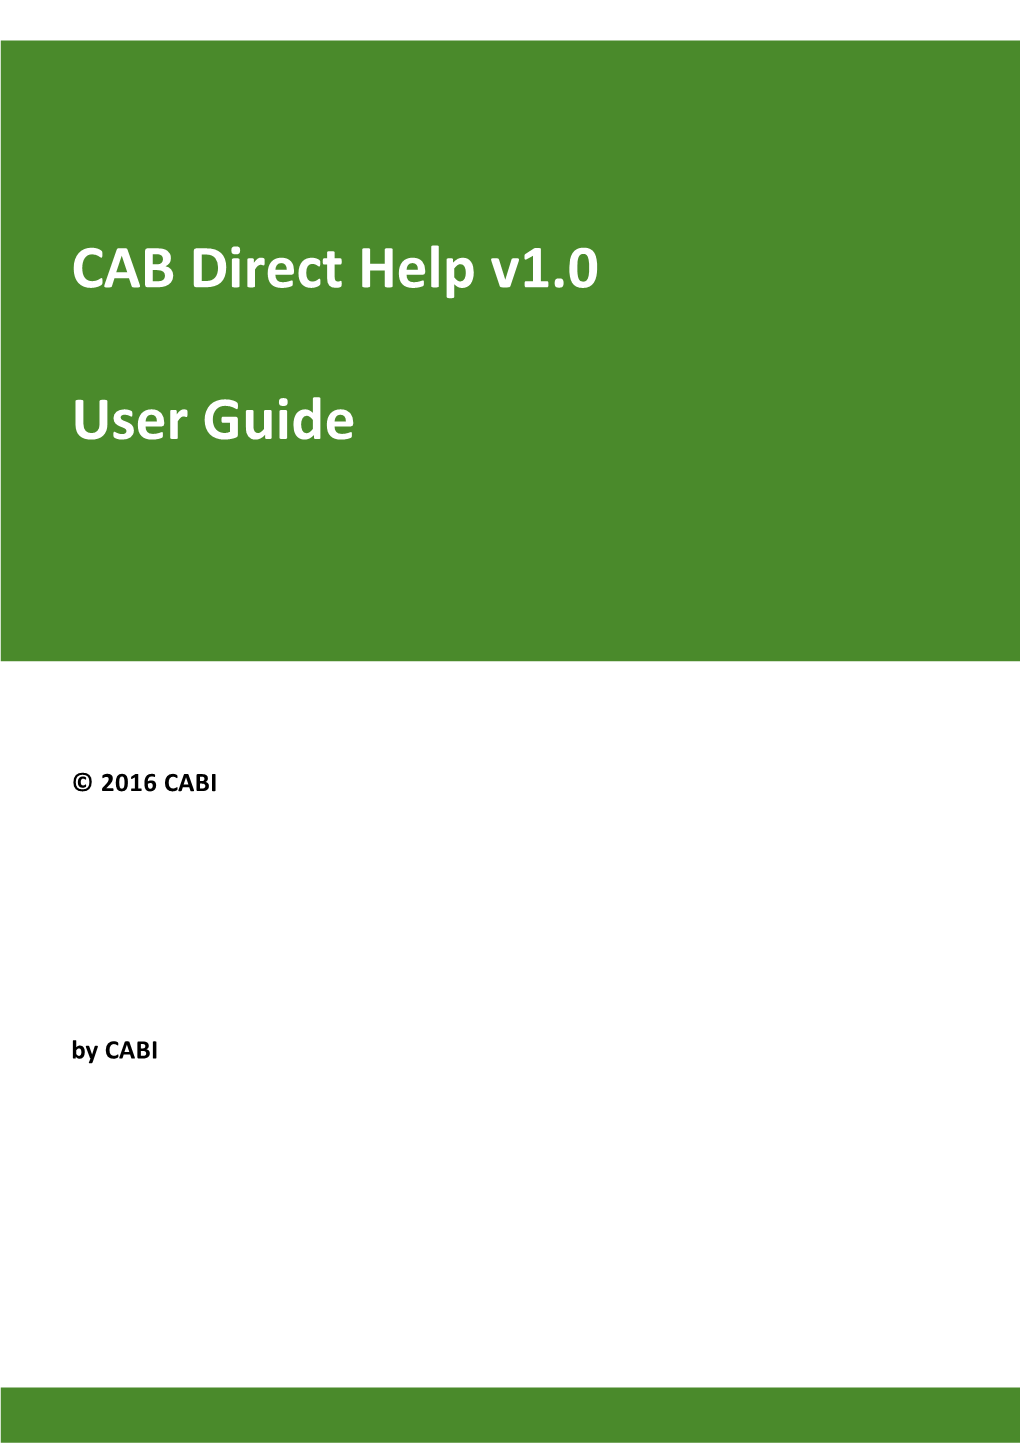 CAB Direct Help V1.0